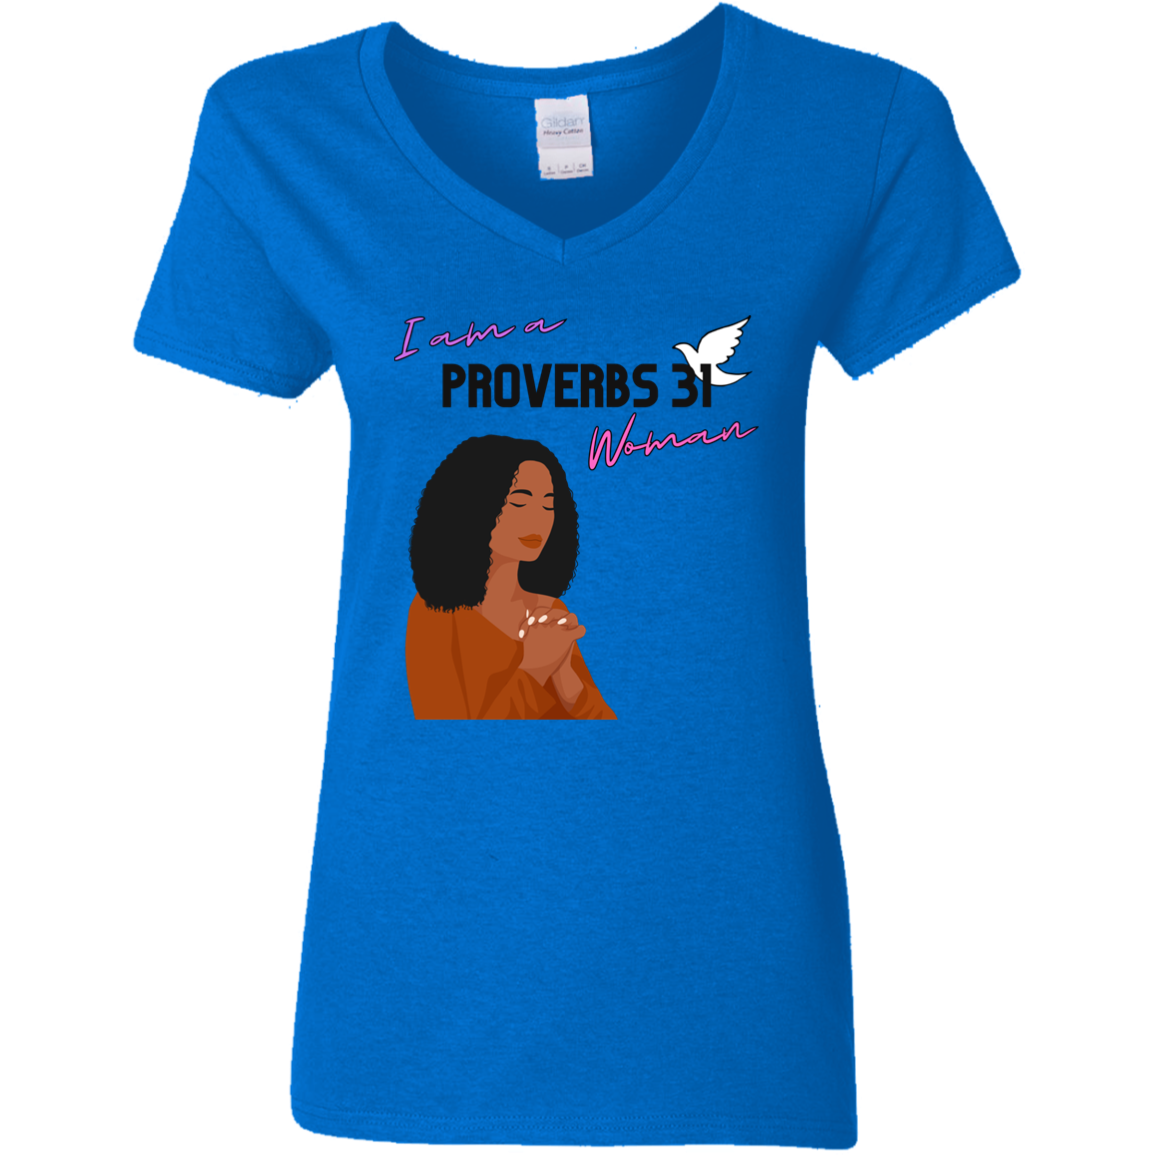 proverbs 31 shirts